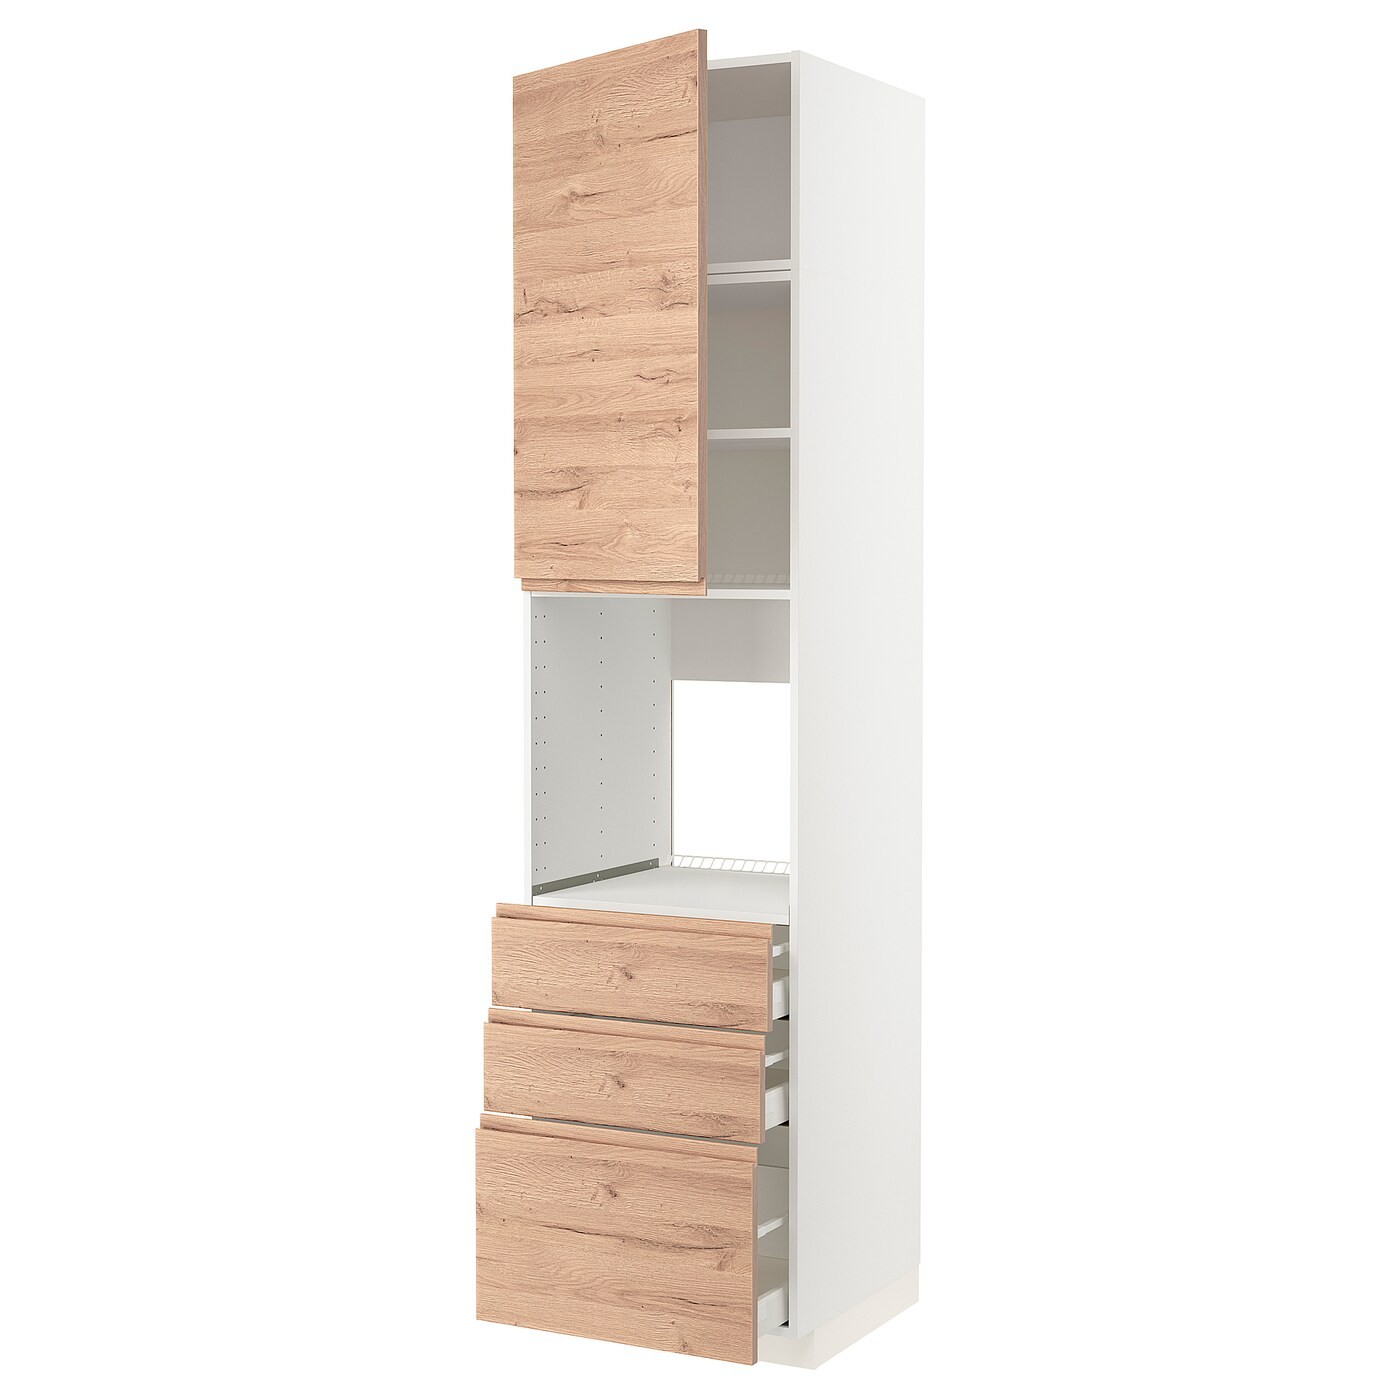 IKEA METOD МЕТОД / MAXIMERA МАКСИМЕРА Высокий шкаф для духовки, белый / Voxtorp имитация дуб, 60x60x240 см 59469024 | 594.690.24